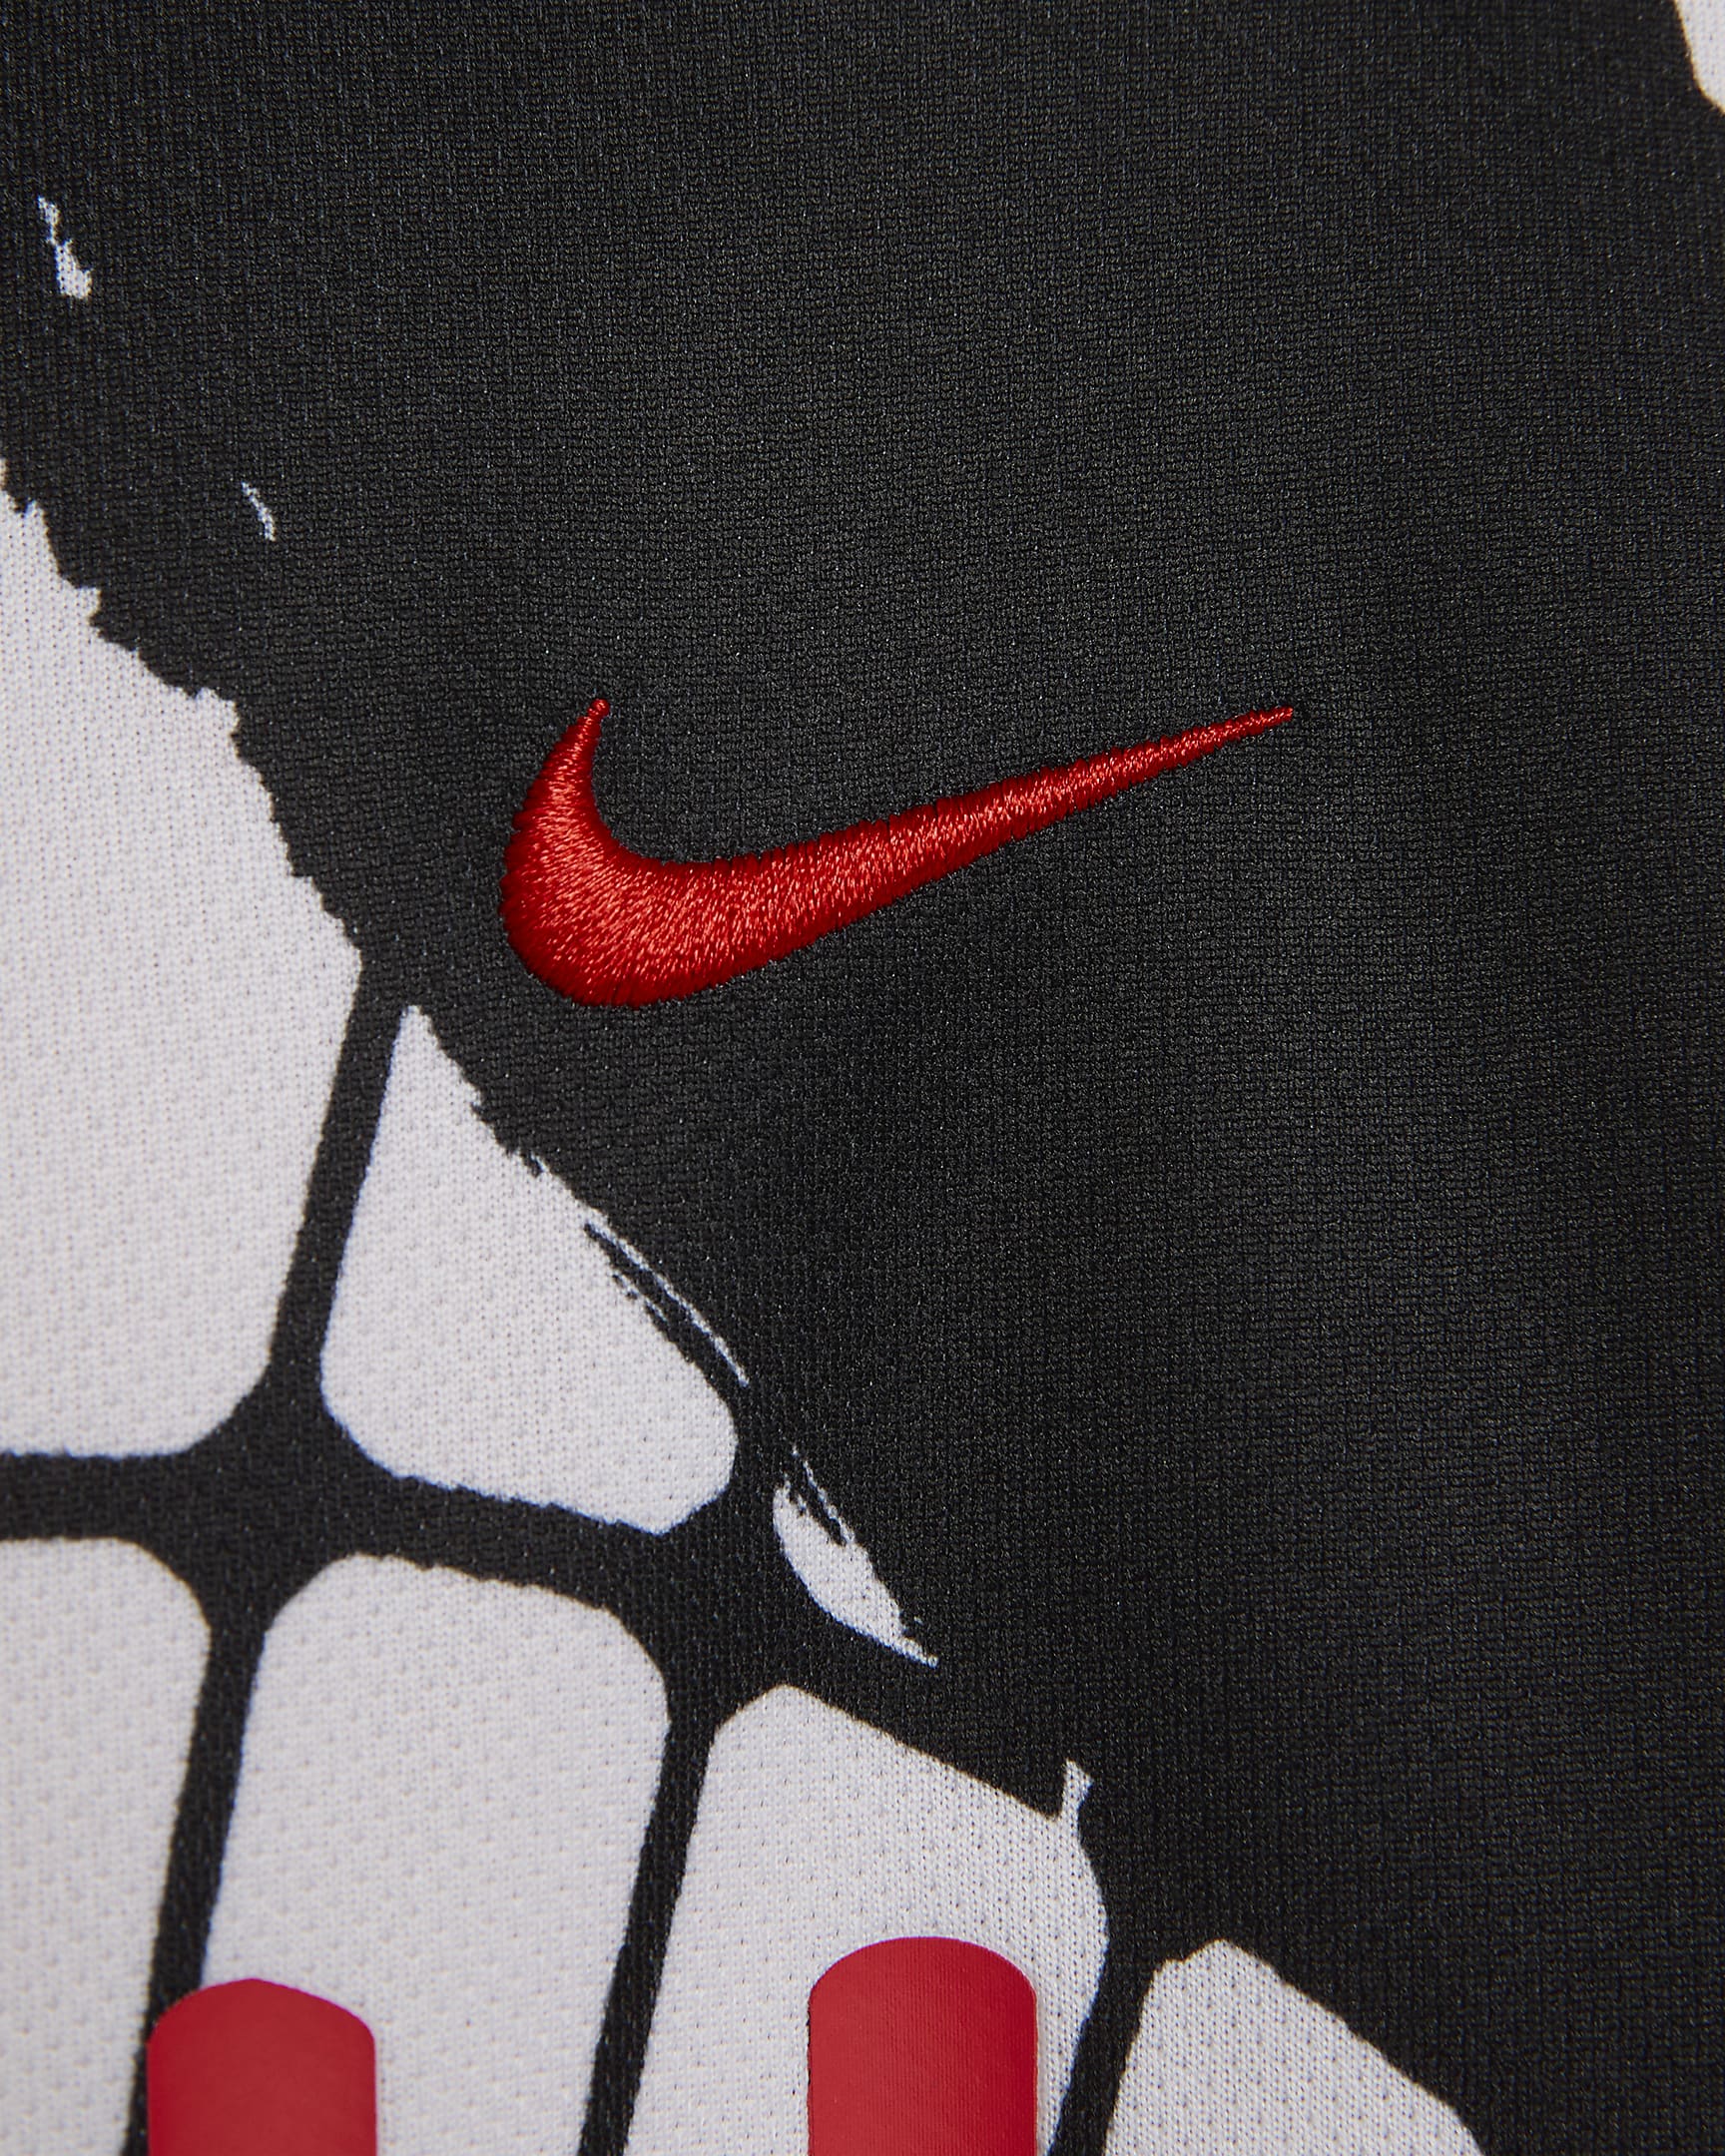 Nike Dri-FIT Men's Football Shirt. Nike IN